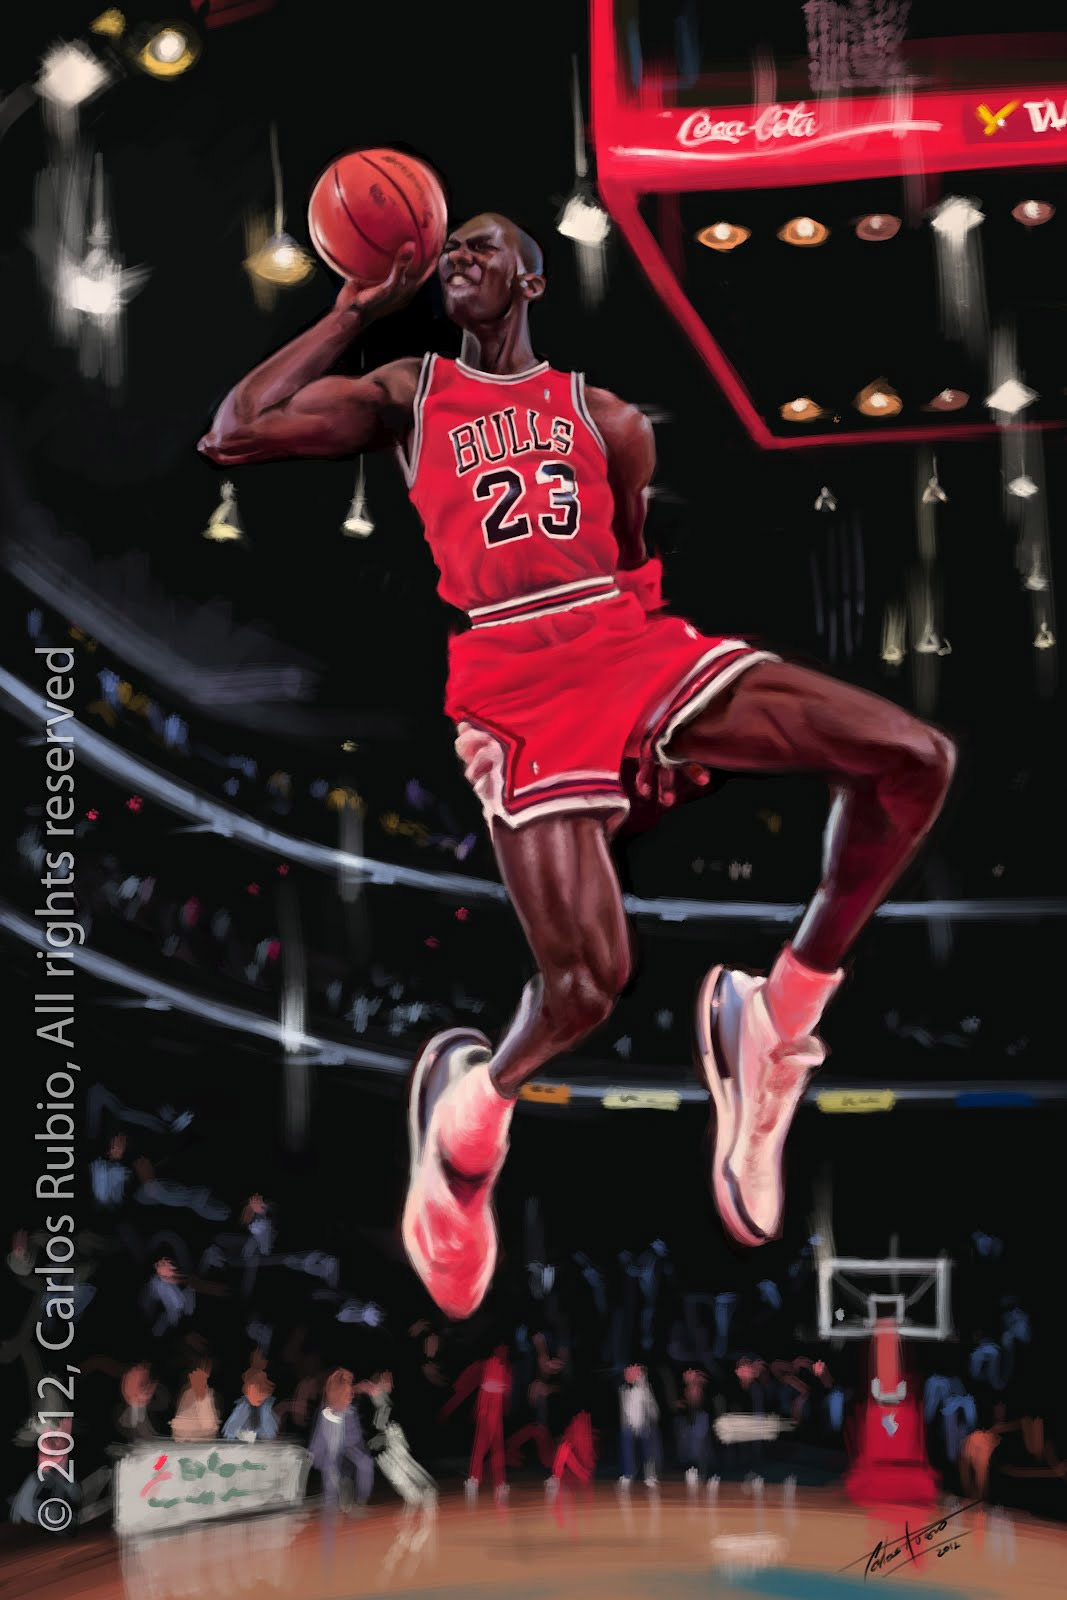 Caricatura de Michael Jordan